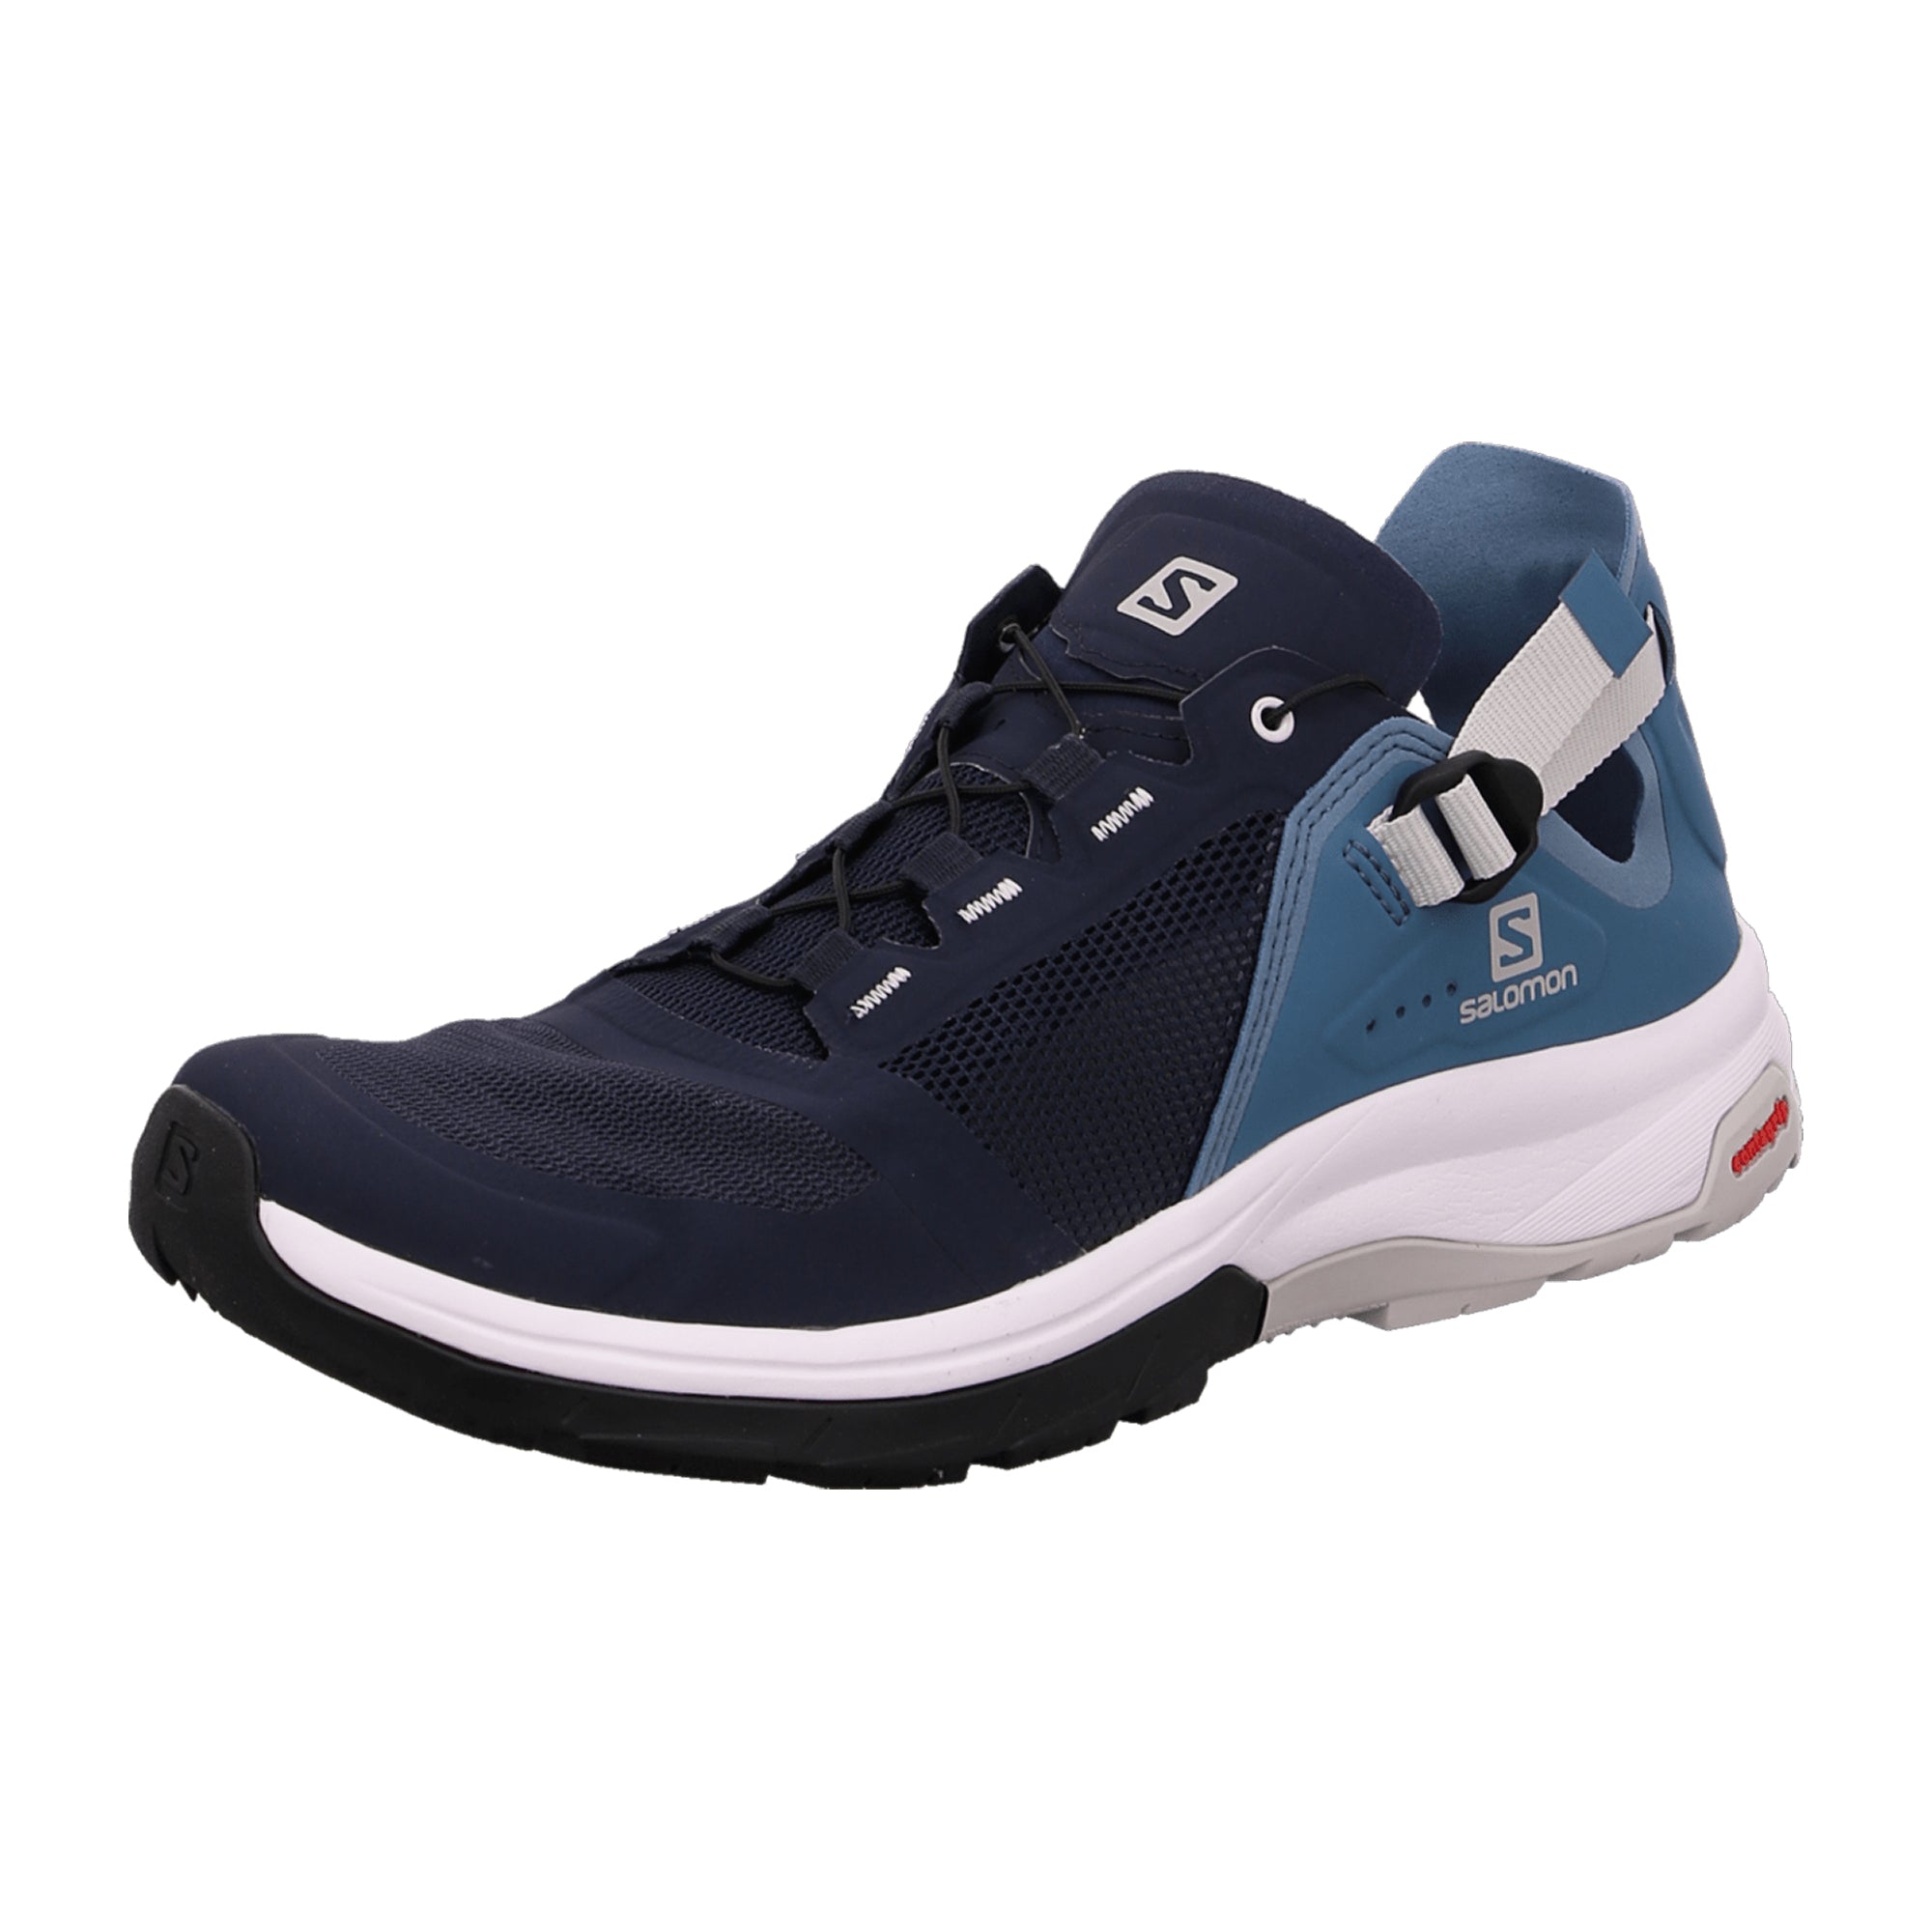 Salomon shoes TECH AMPHIB 4 Navy Blaze/Blu for men, blue